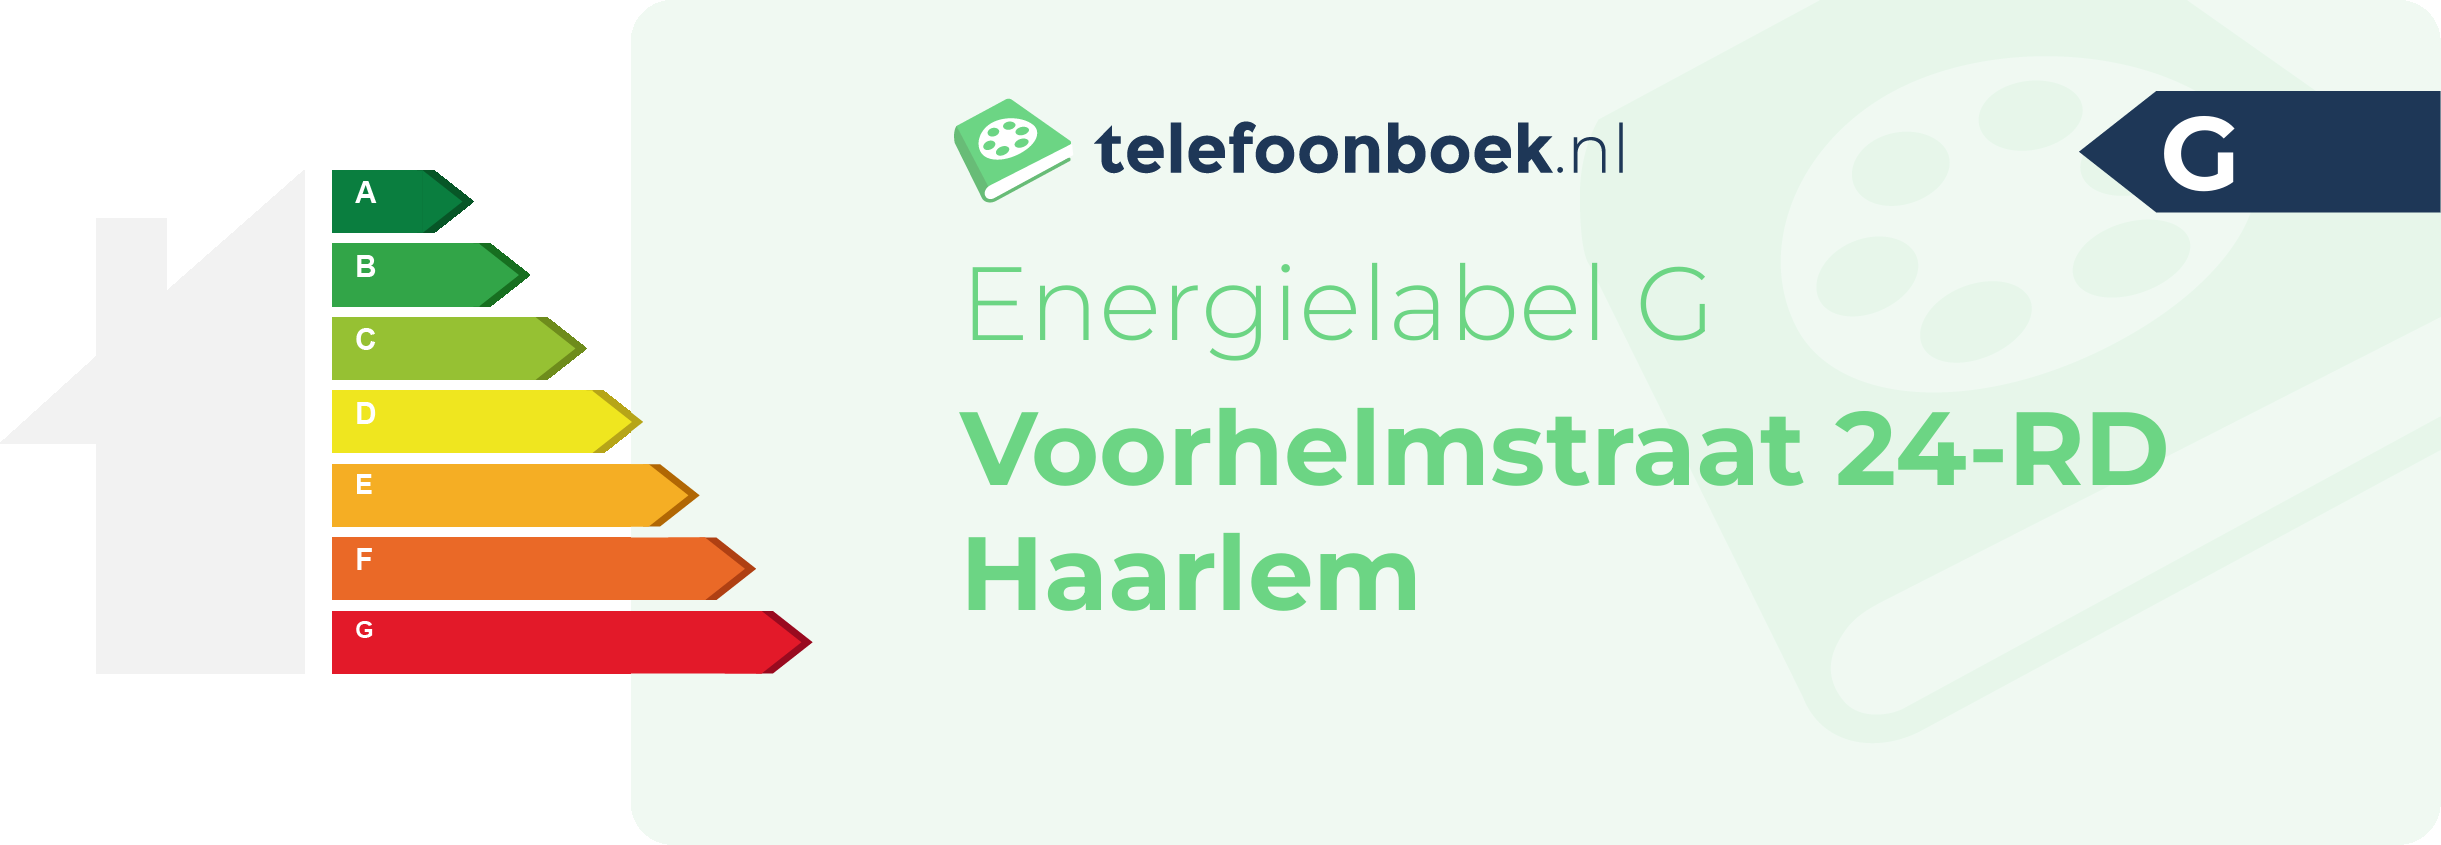 Energielabel Voorhelmstraat 24-RD Haarlem